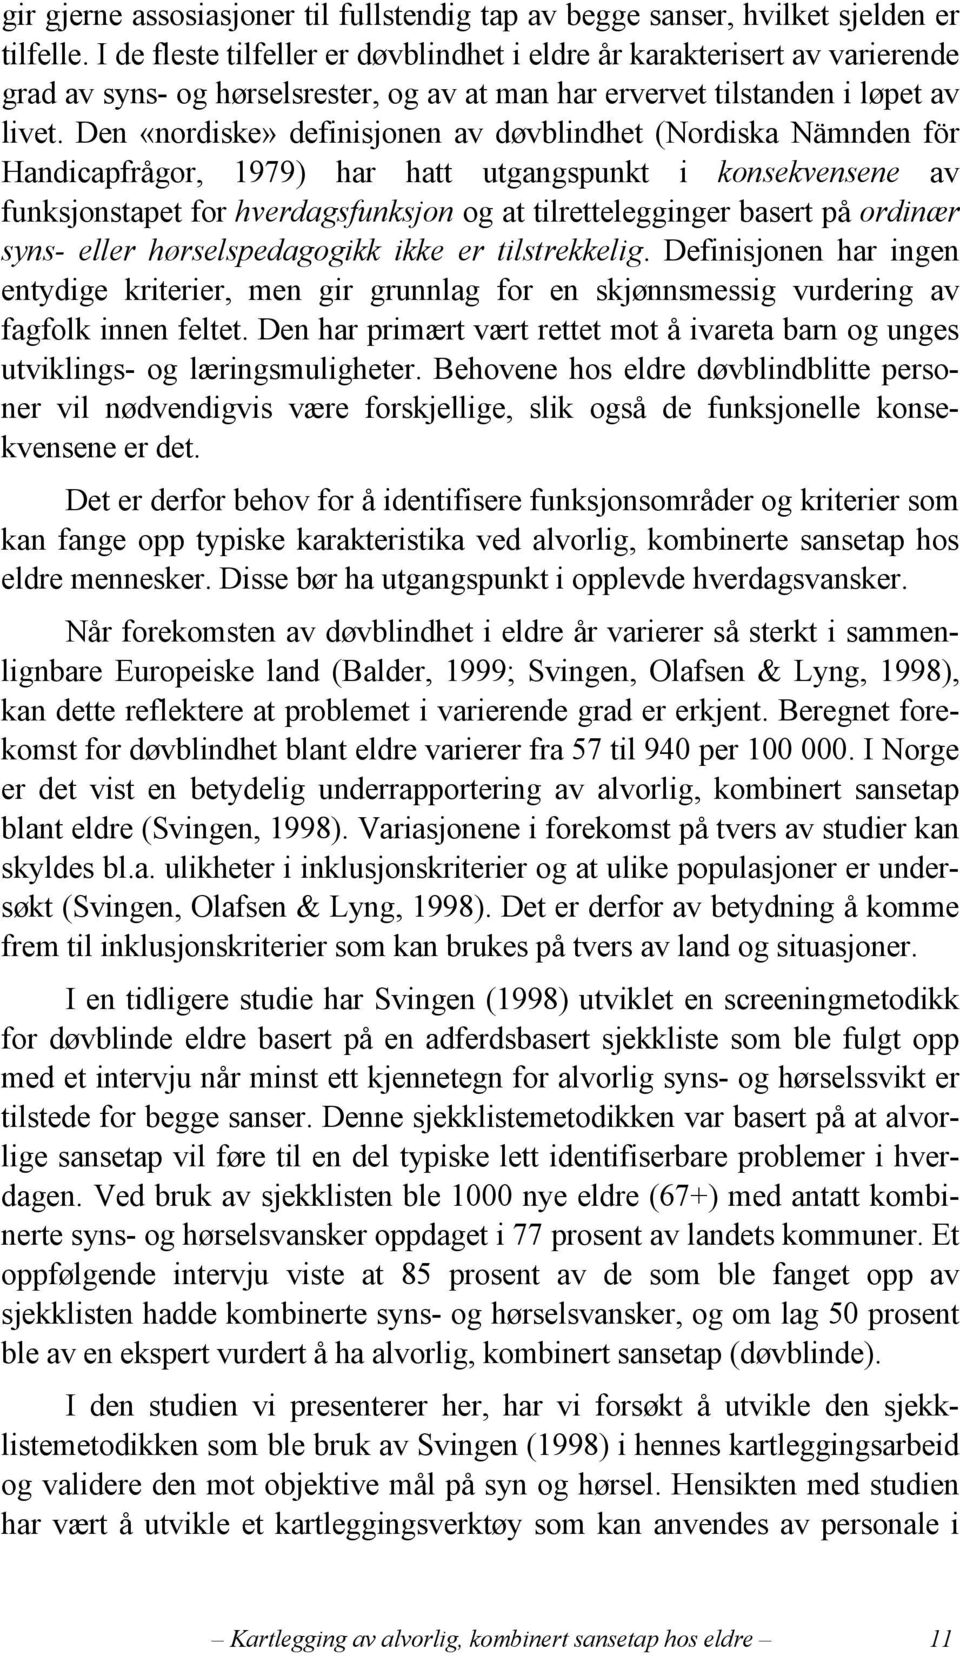 Den «nordiske» definisjonen av døvblindhet (Nordiska Nämnden för Handicapfrågor, 1979) har hatt utgangspunkt i konsekvensene av funksjonstapet for hverdagsfunksjon og at tilrettelegginger basert på